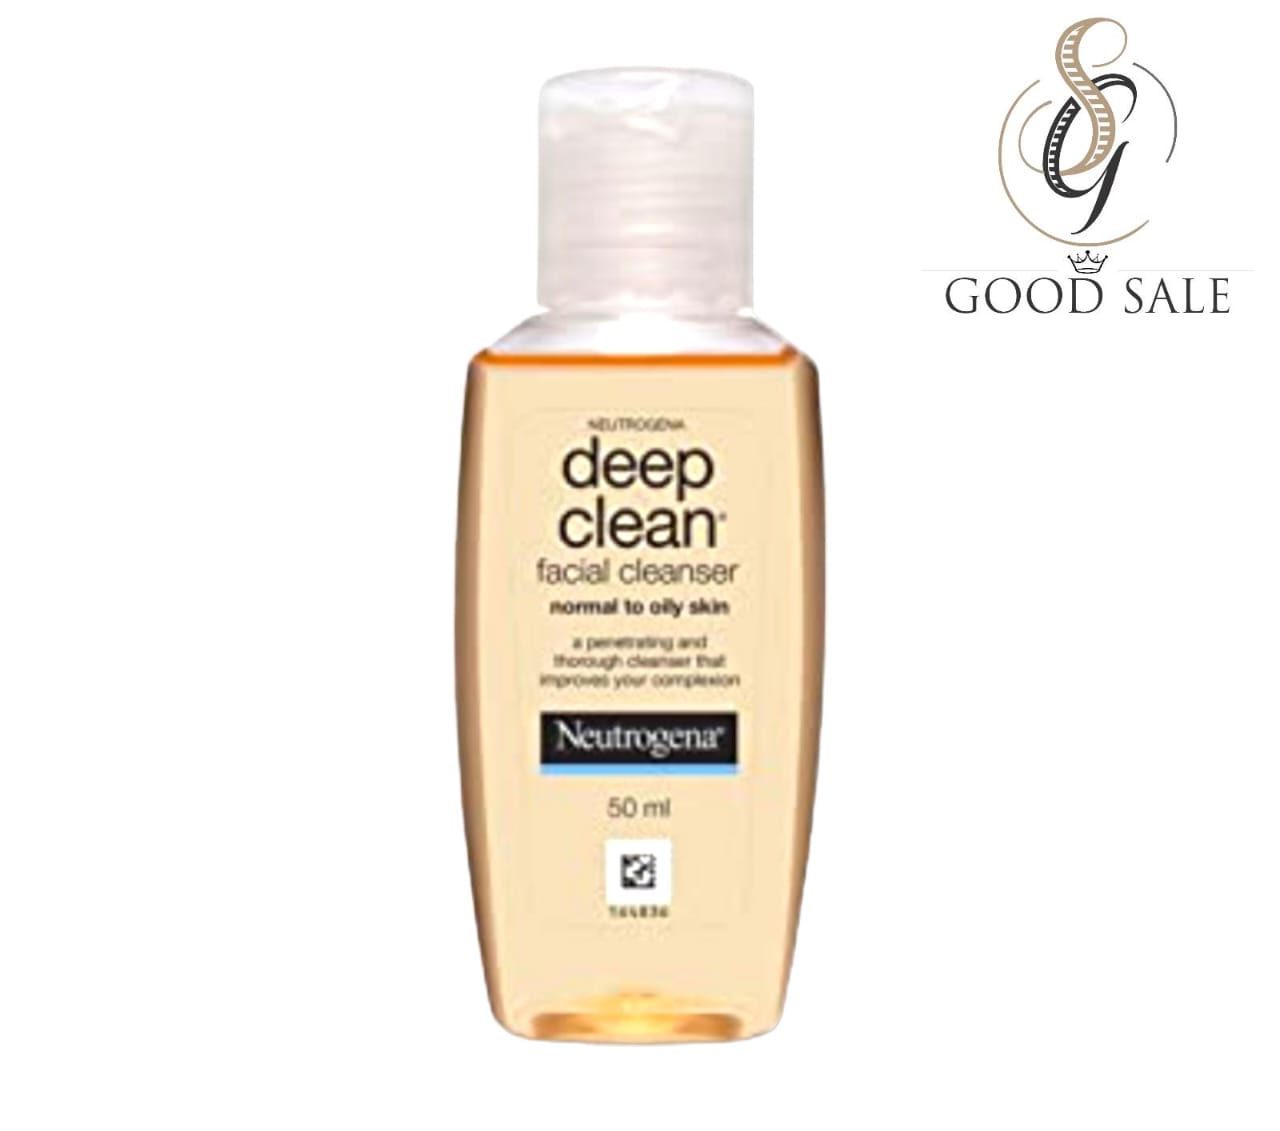 Deep Clean Facial Cleanser